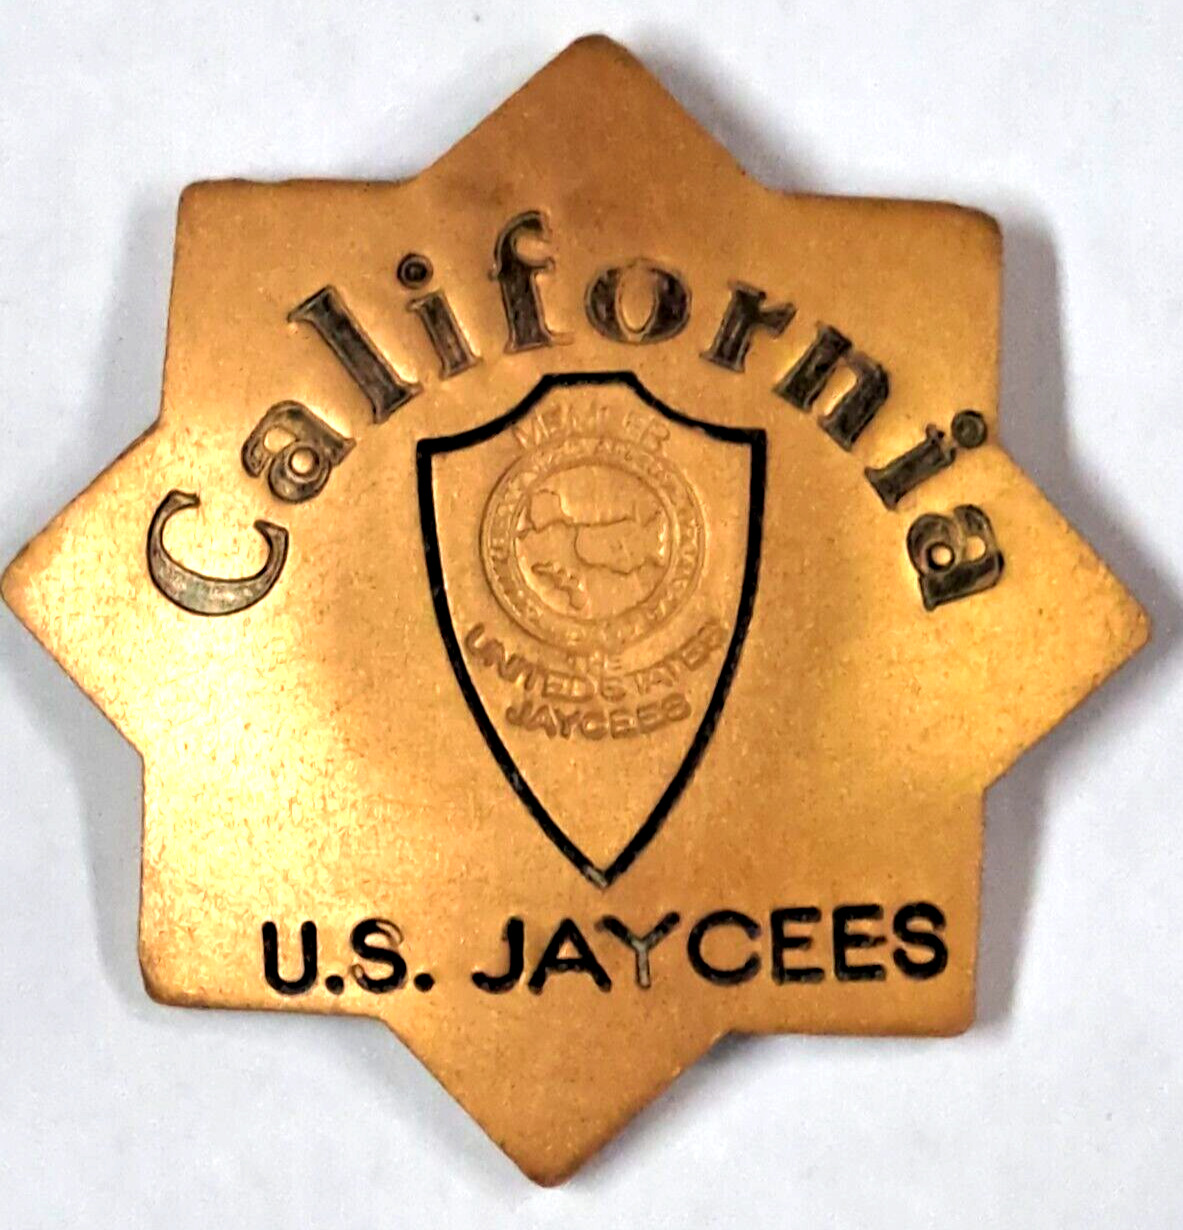 Vintage metal California U.S. Jaycees badge pin pinback